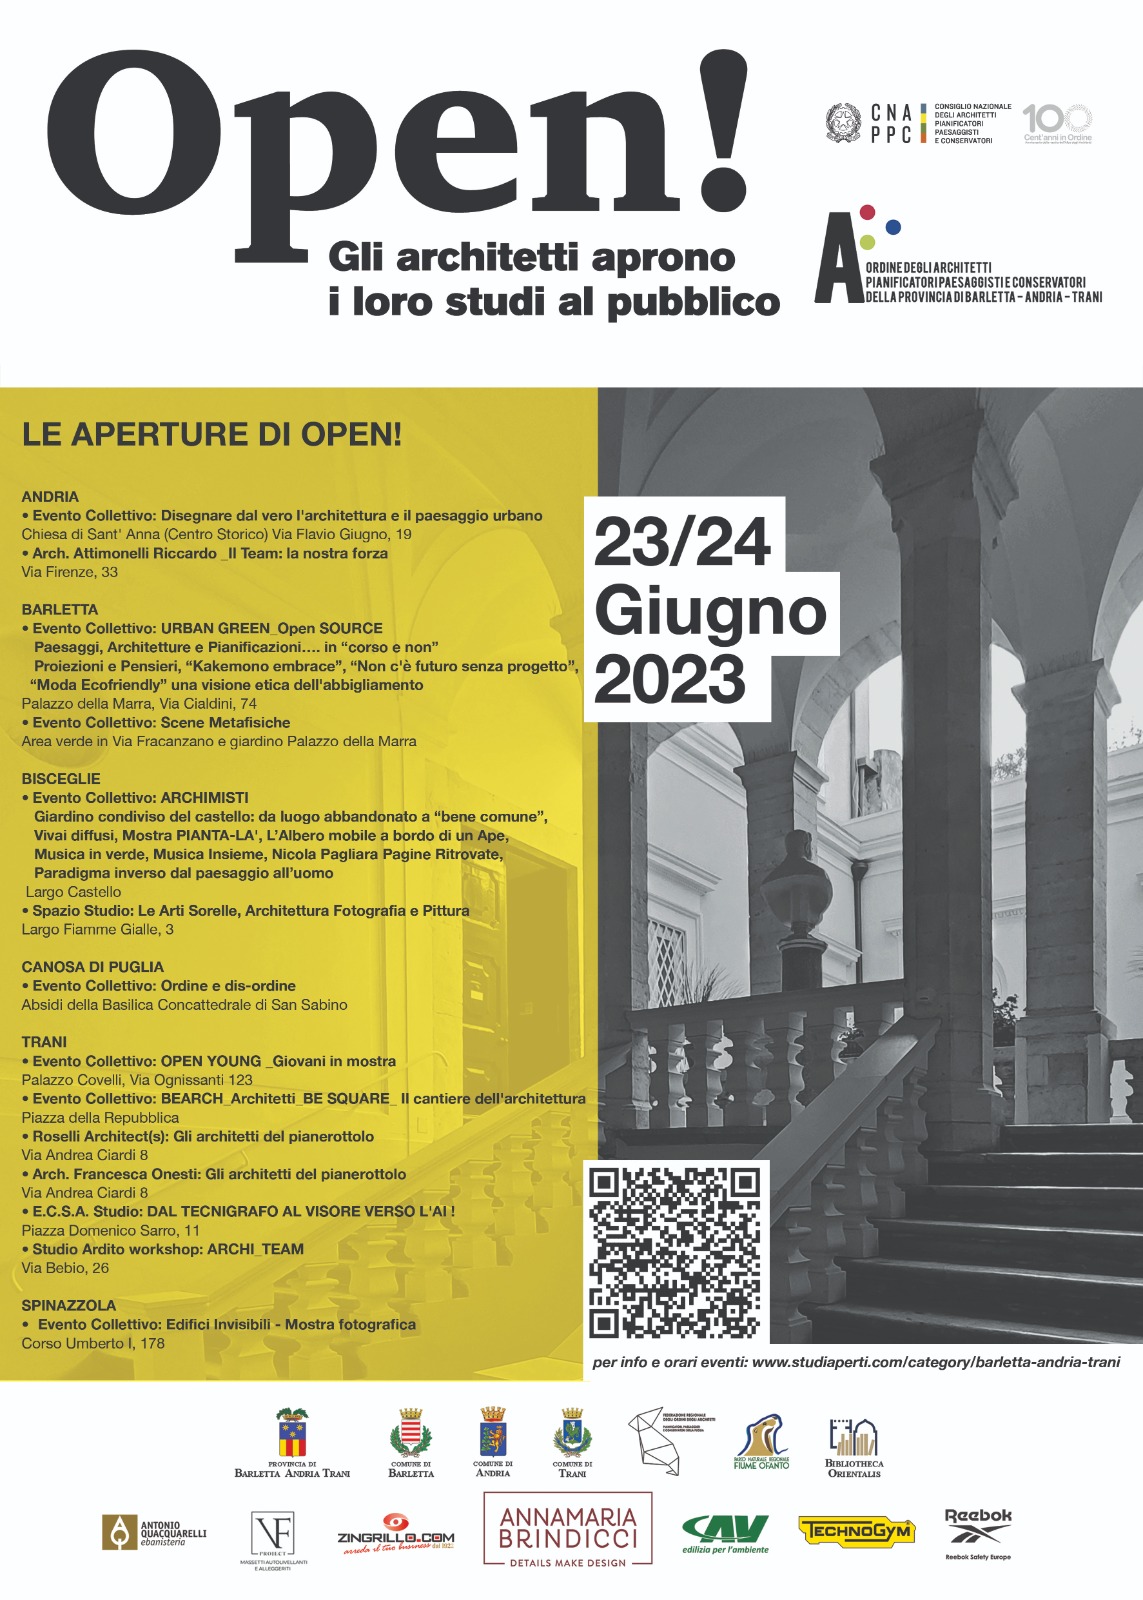 Architetti "Open", studi aperti nella Bat Noi Notizie.